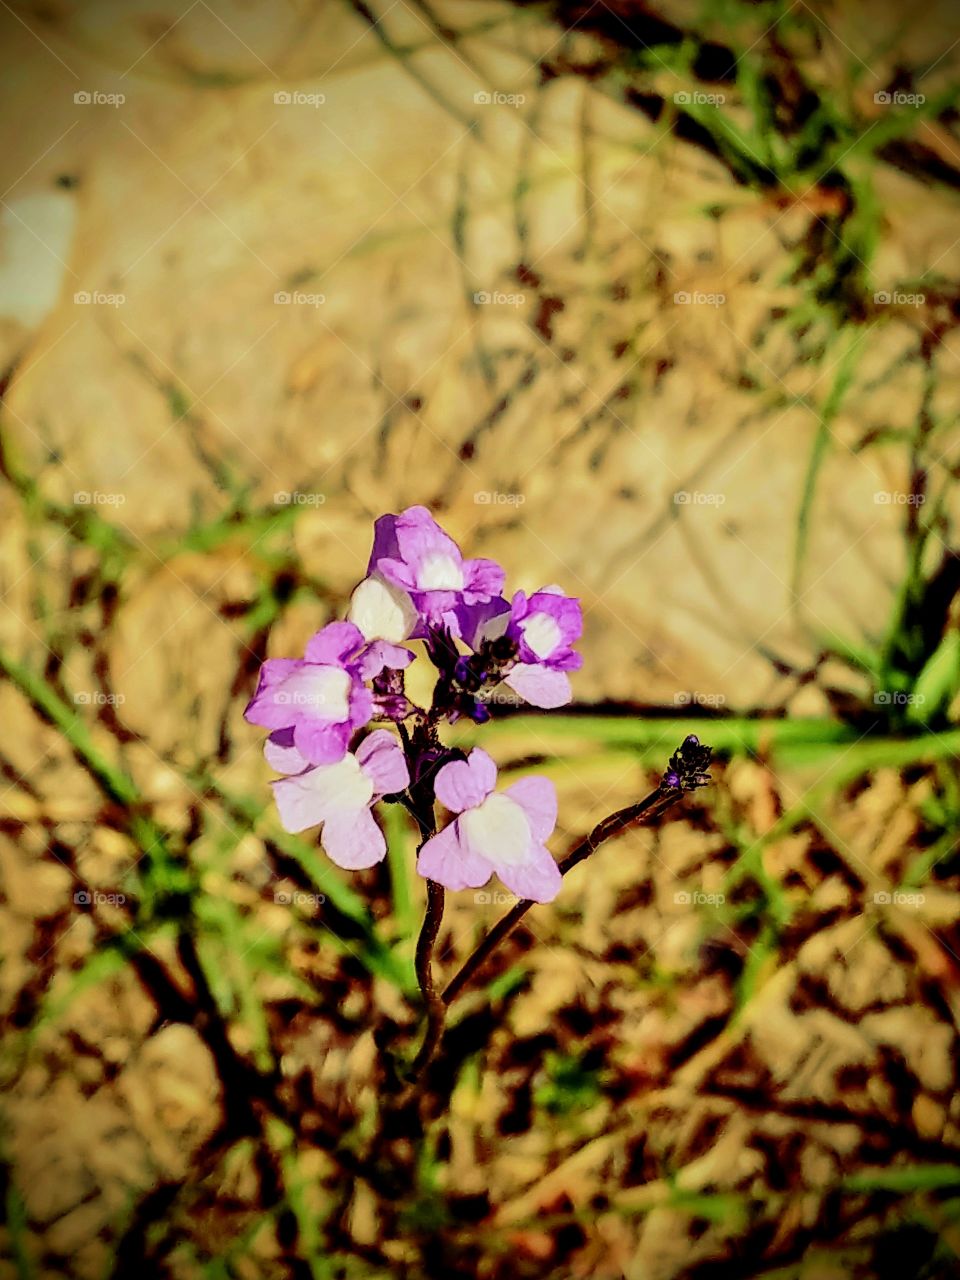 tiny purple spring blossom